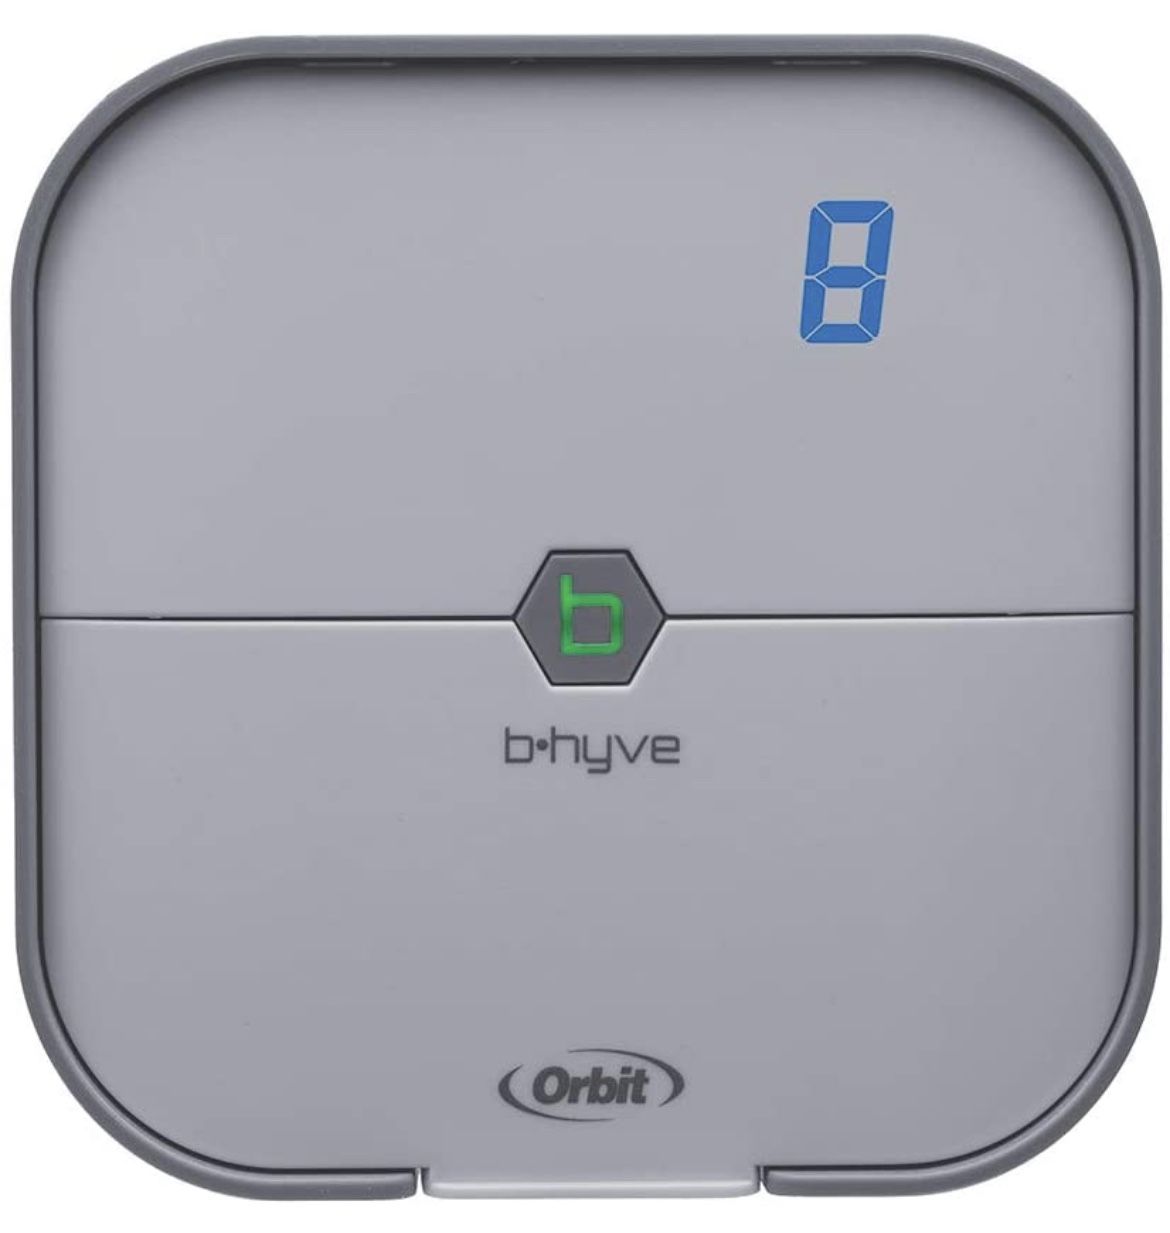 Orbit B-hyve 8-Zone Smart Indoor Sprinkler Controller